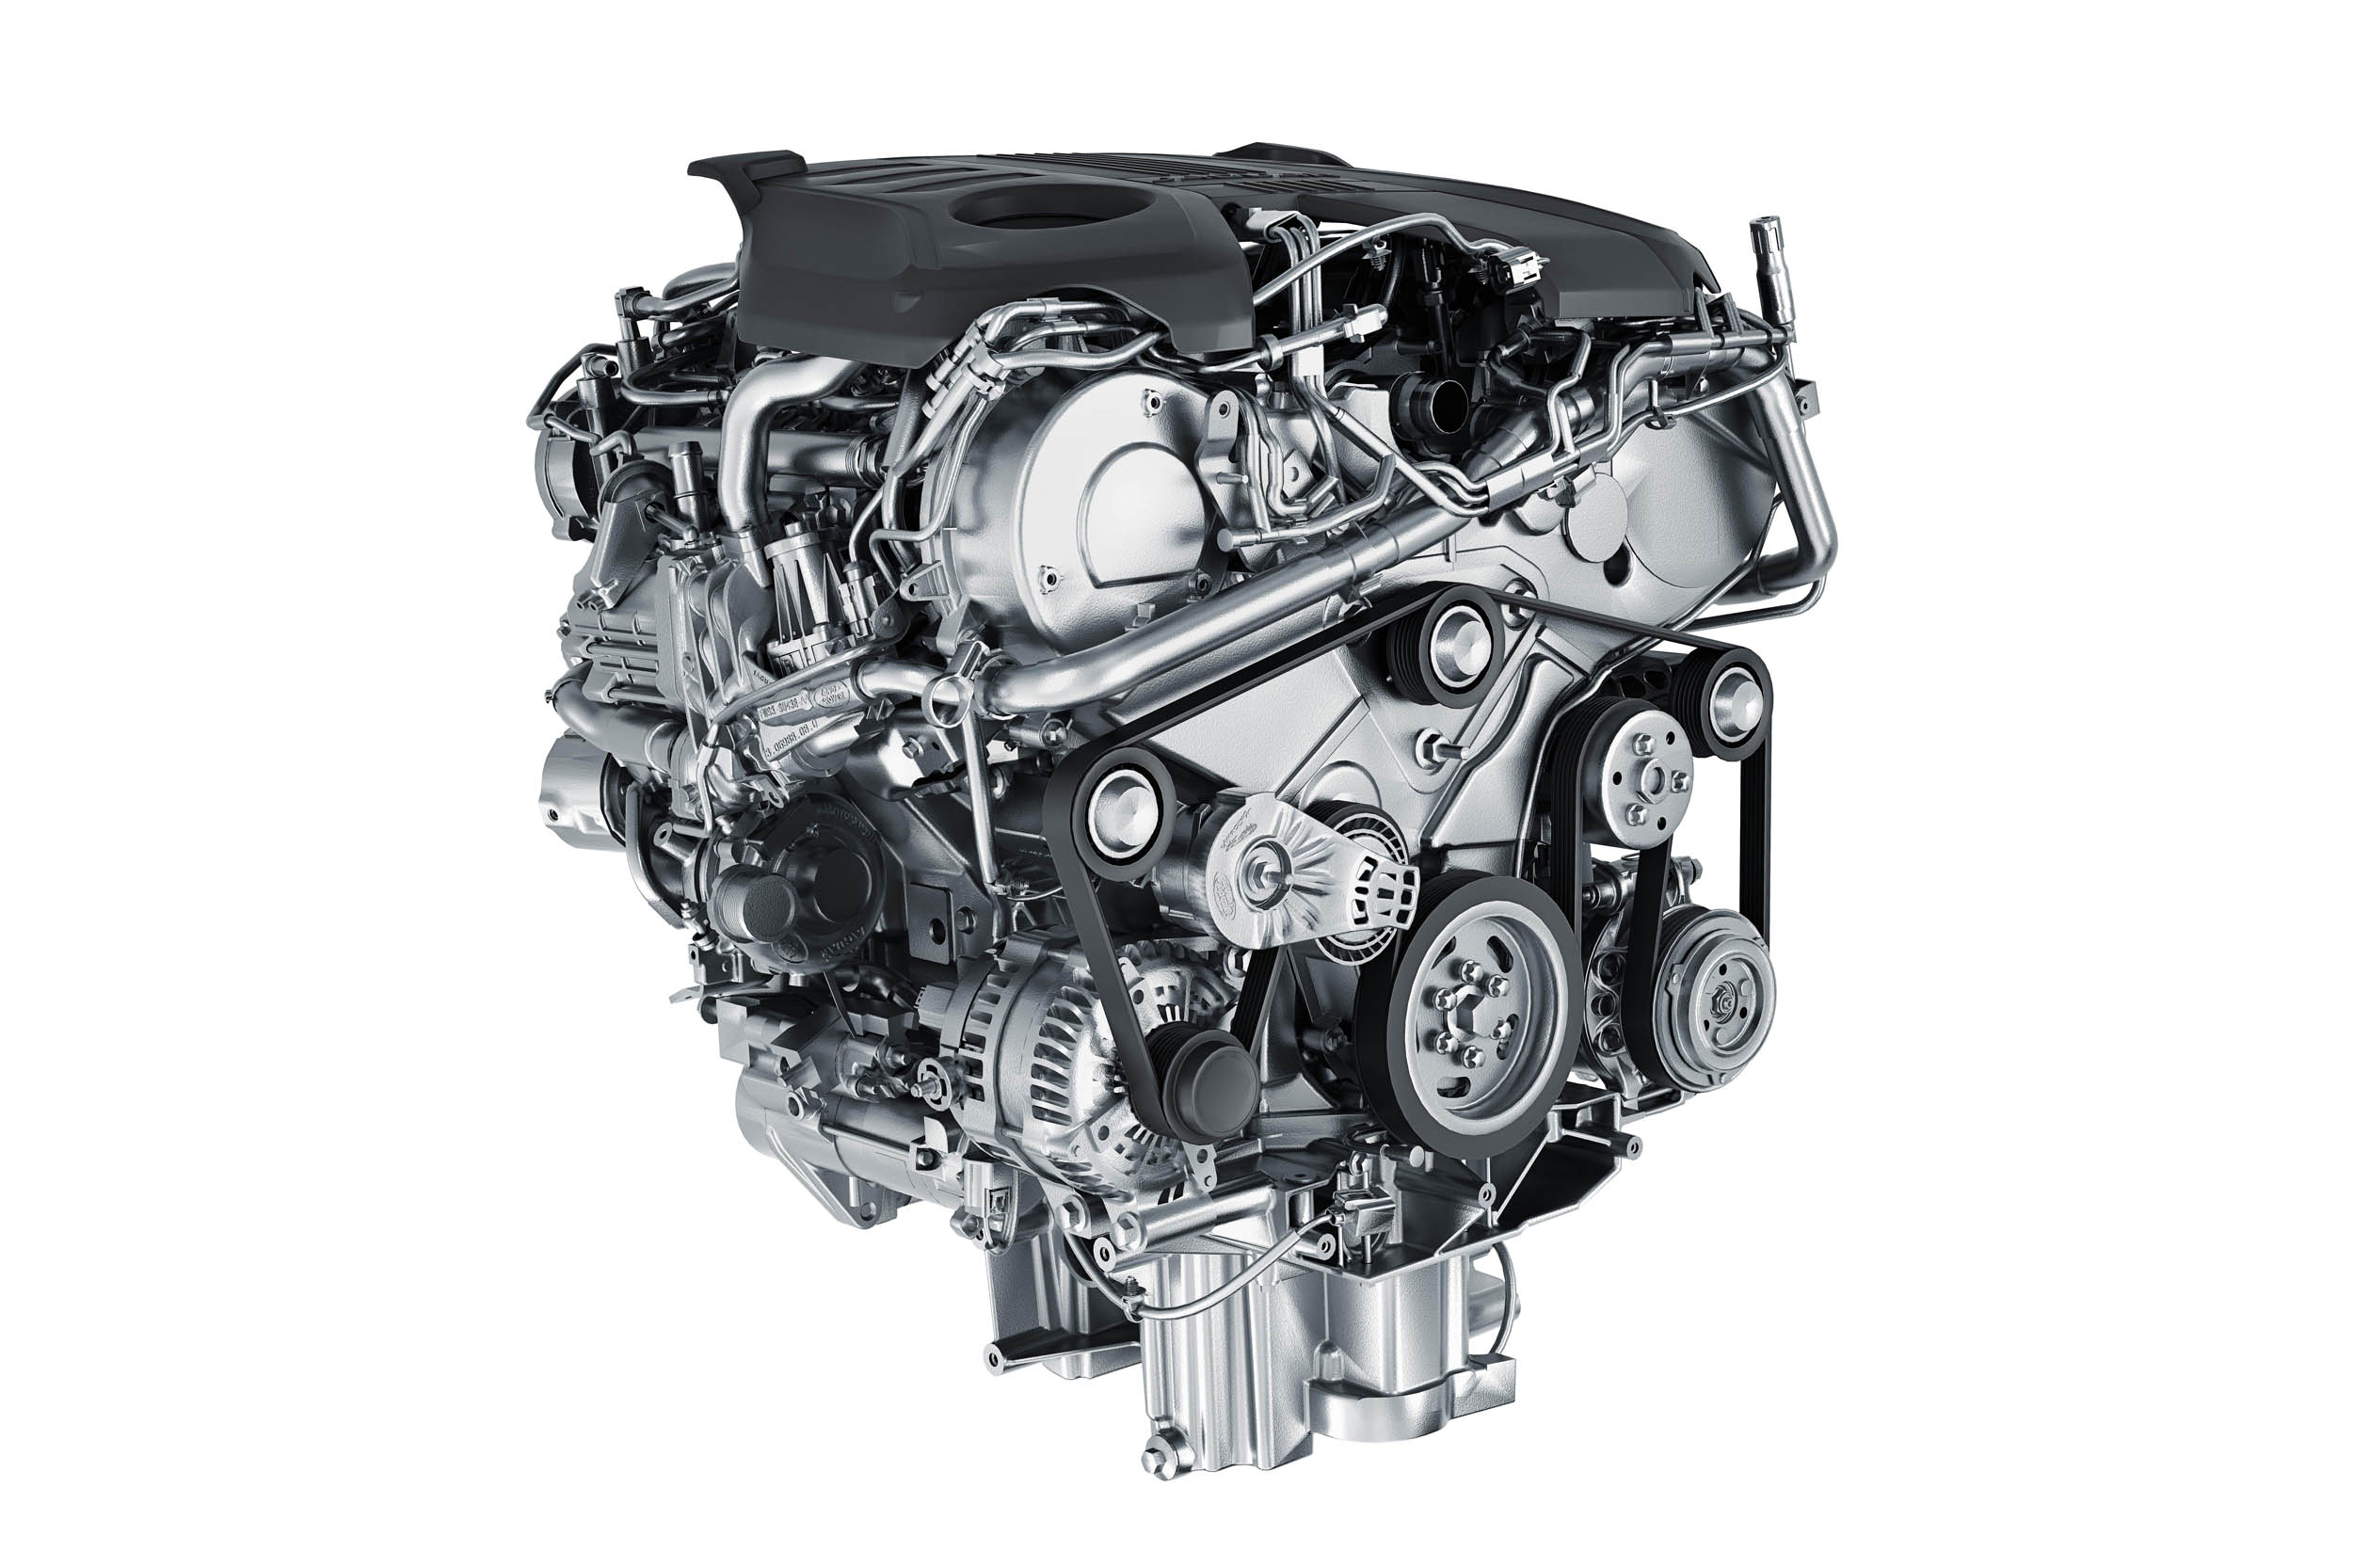 Дизель 3.3. Приводной ремень Ягуар 3.0 дизель. Мотор Ягуар 2,0 дизель. Двигатель Ягуар 3.0 дизель. Ягуар 3.0 дизель обводной ремень.